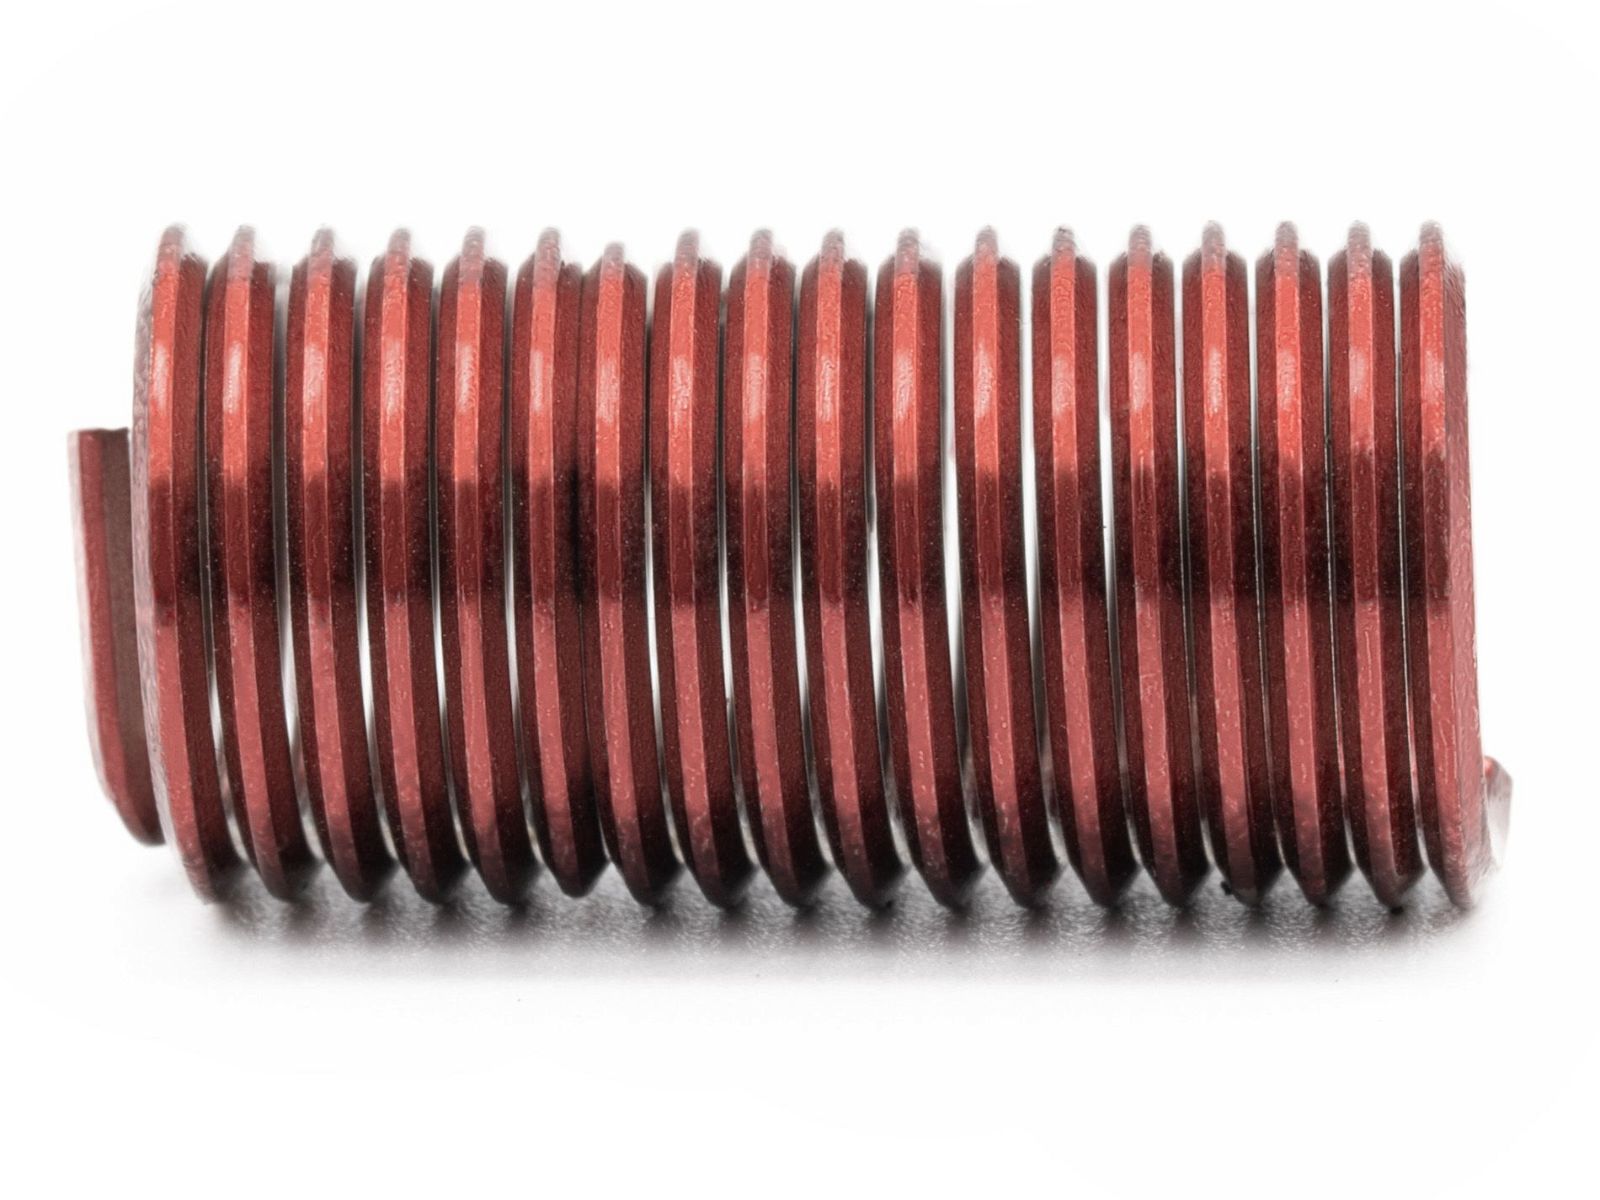 BaerCoil Wire Thread Inserts M 8 x 1.25 - 3.0 D (24 mm) - screw grip (screw locking) - 10 pcs.